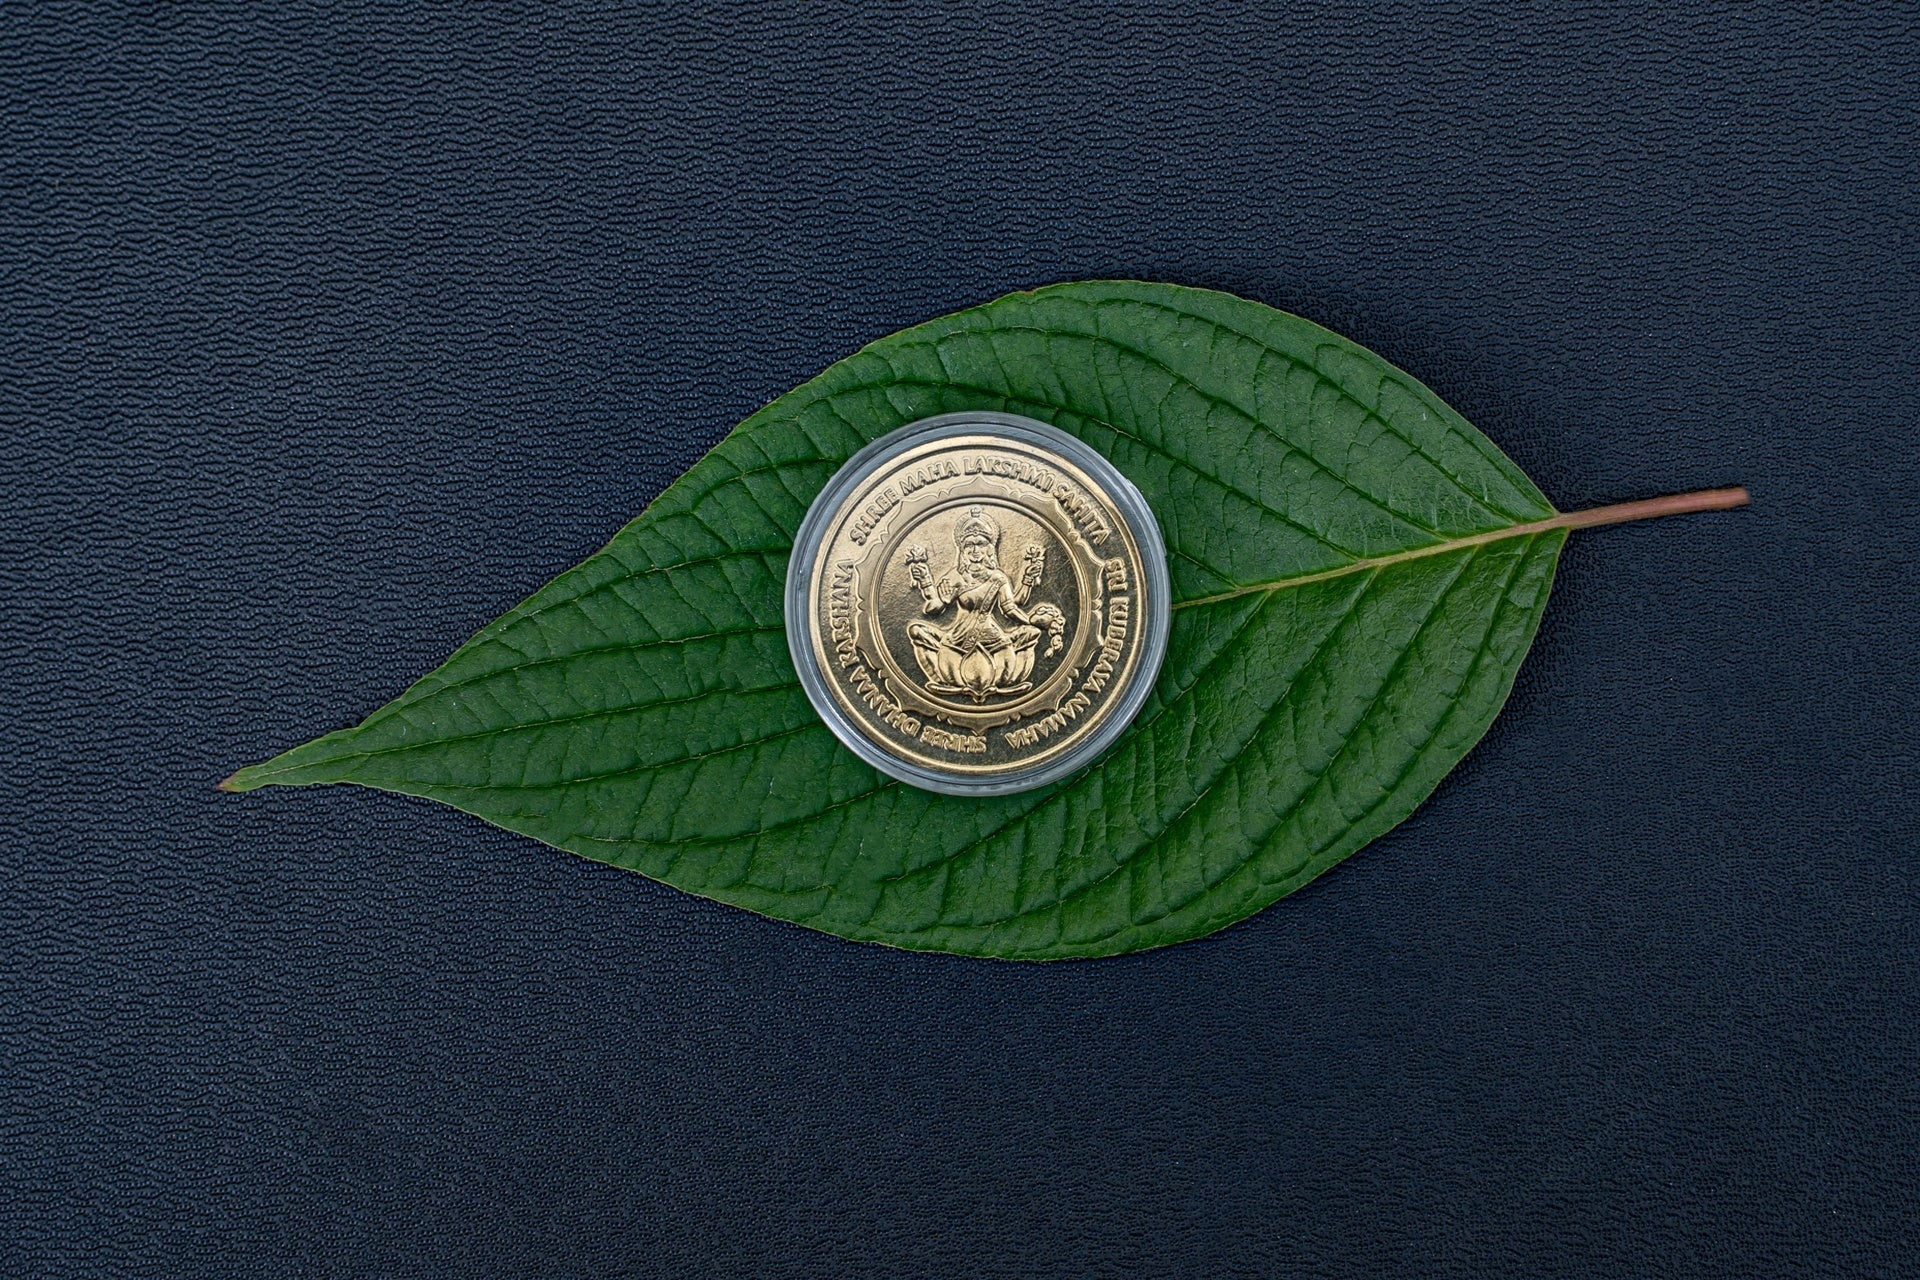 Maha-Lakshmi Coin